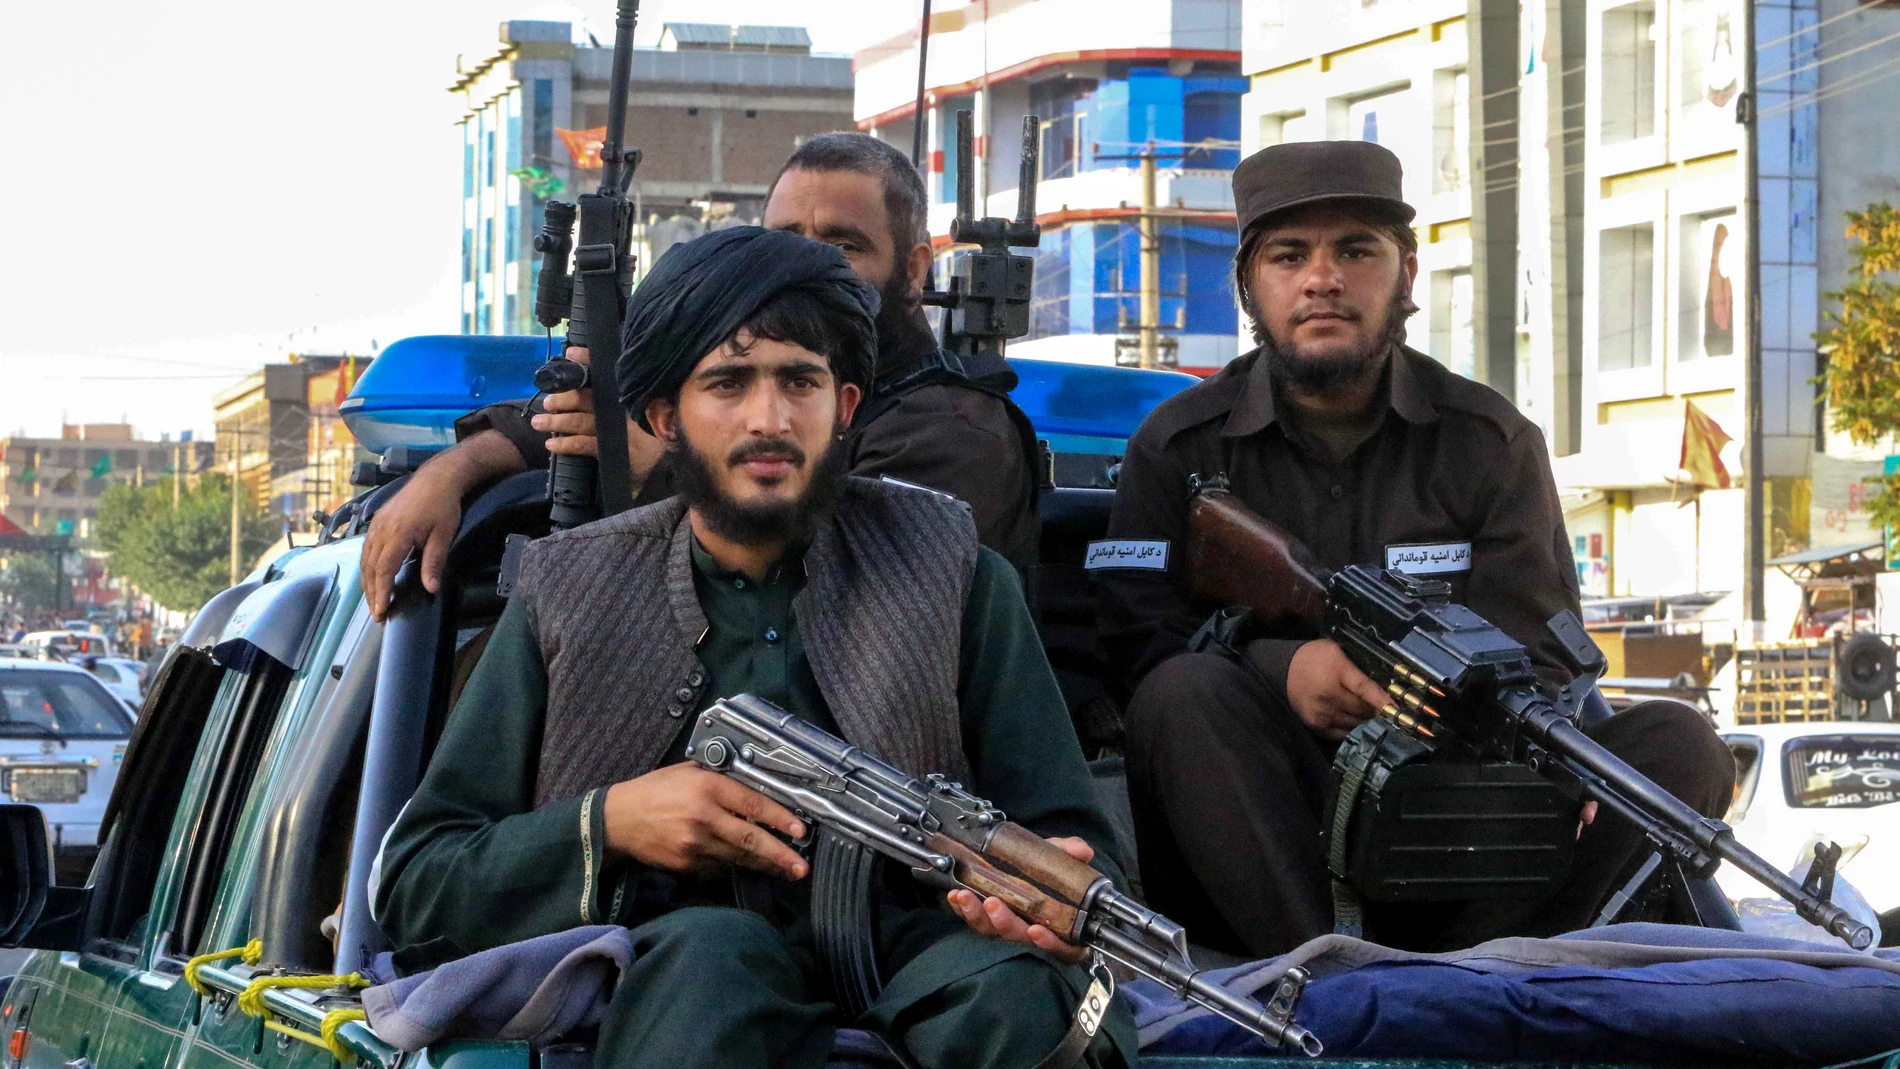 Efectivos de las fuerzas de seguridad de los talibanes en Kabul